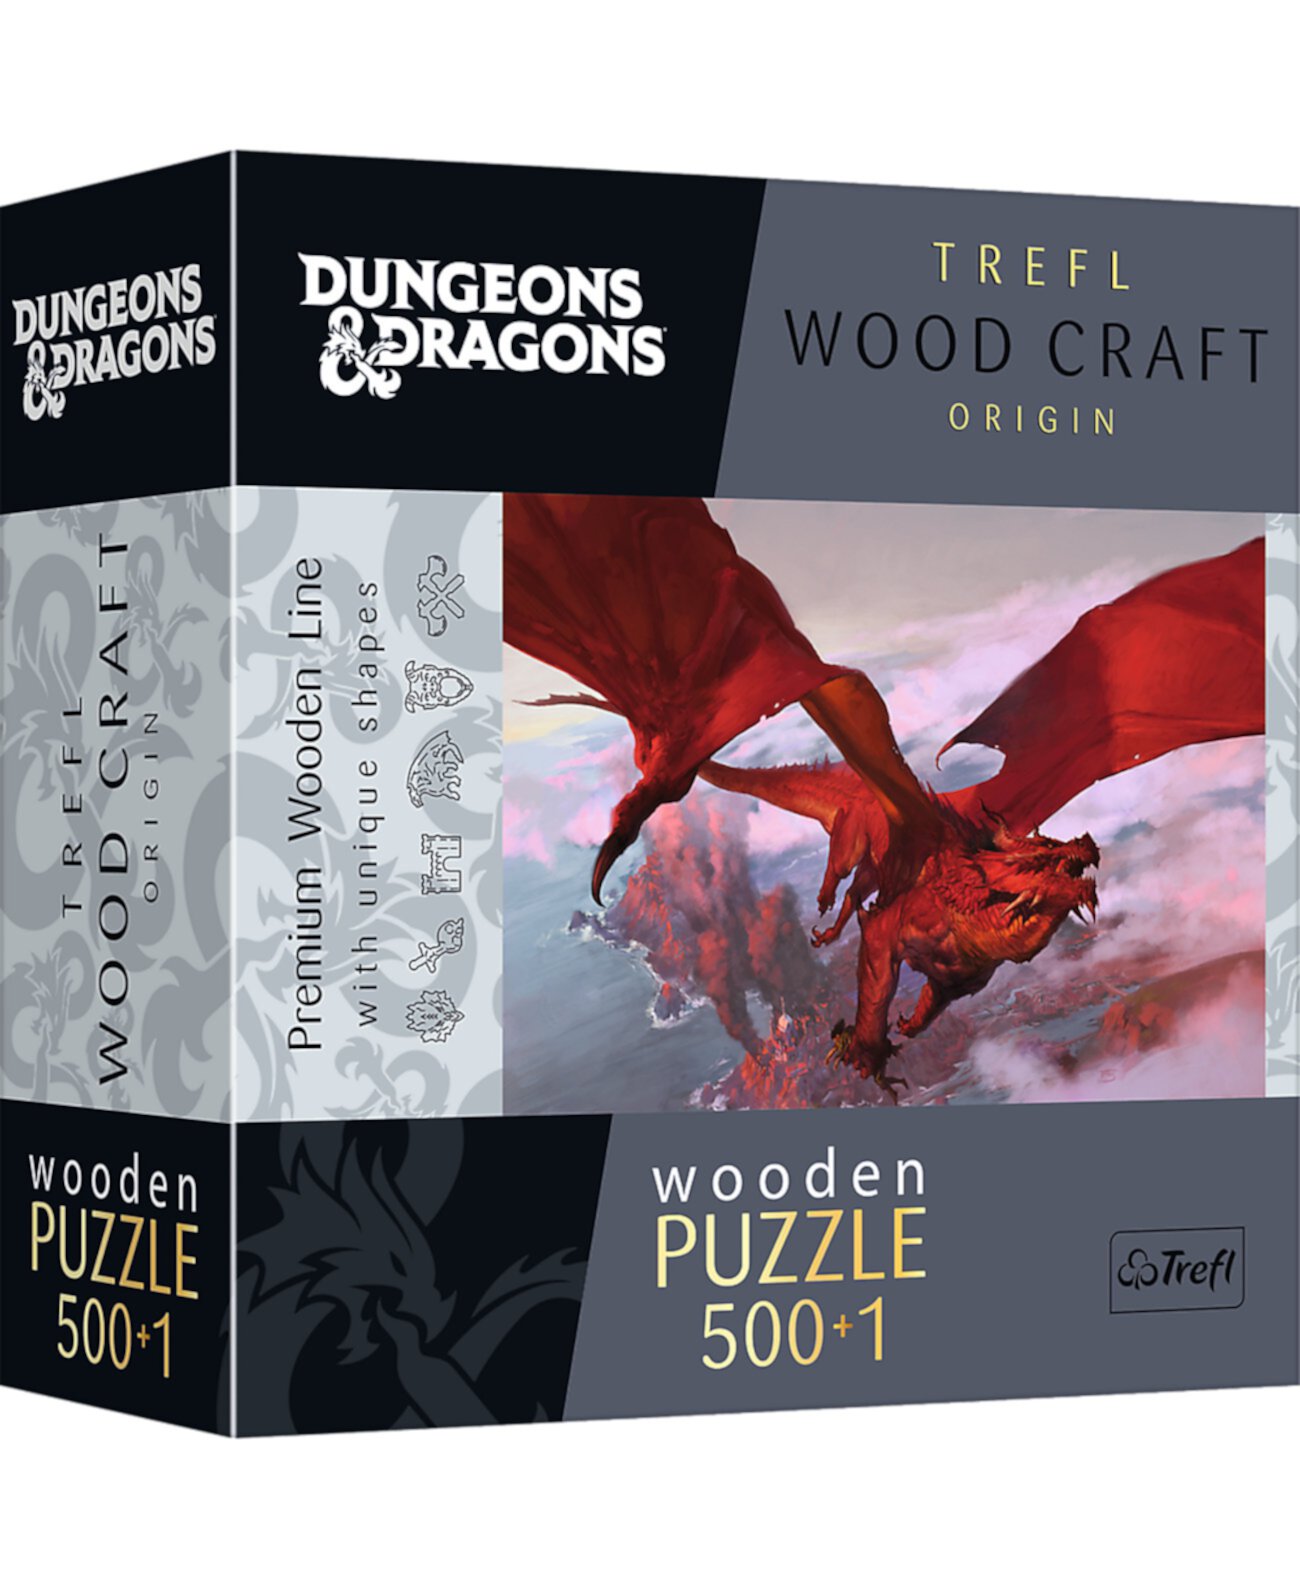 Wood Craft 500 Plus 1 шт. Деревянный пазл — древний красный дракон Trefl